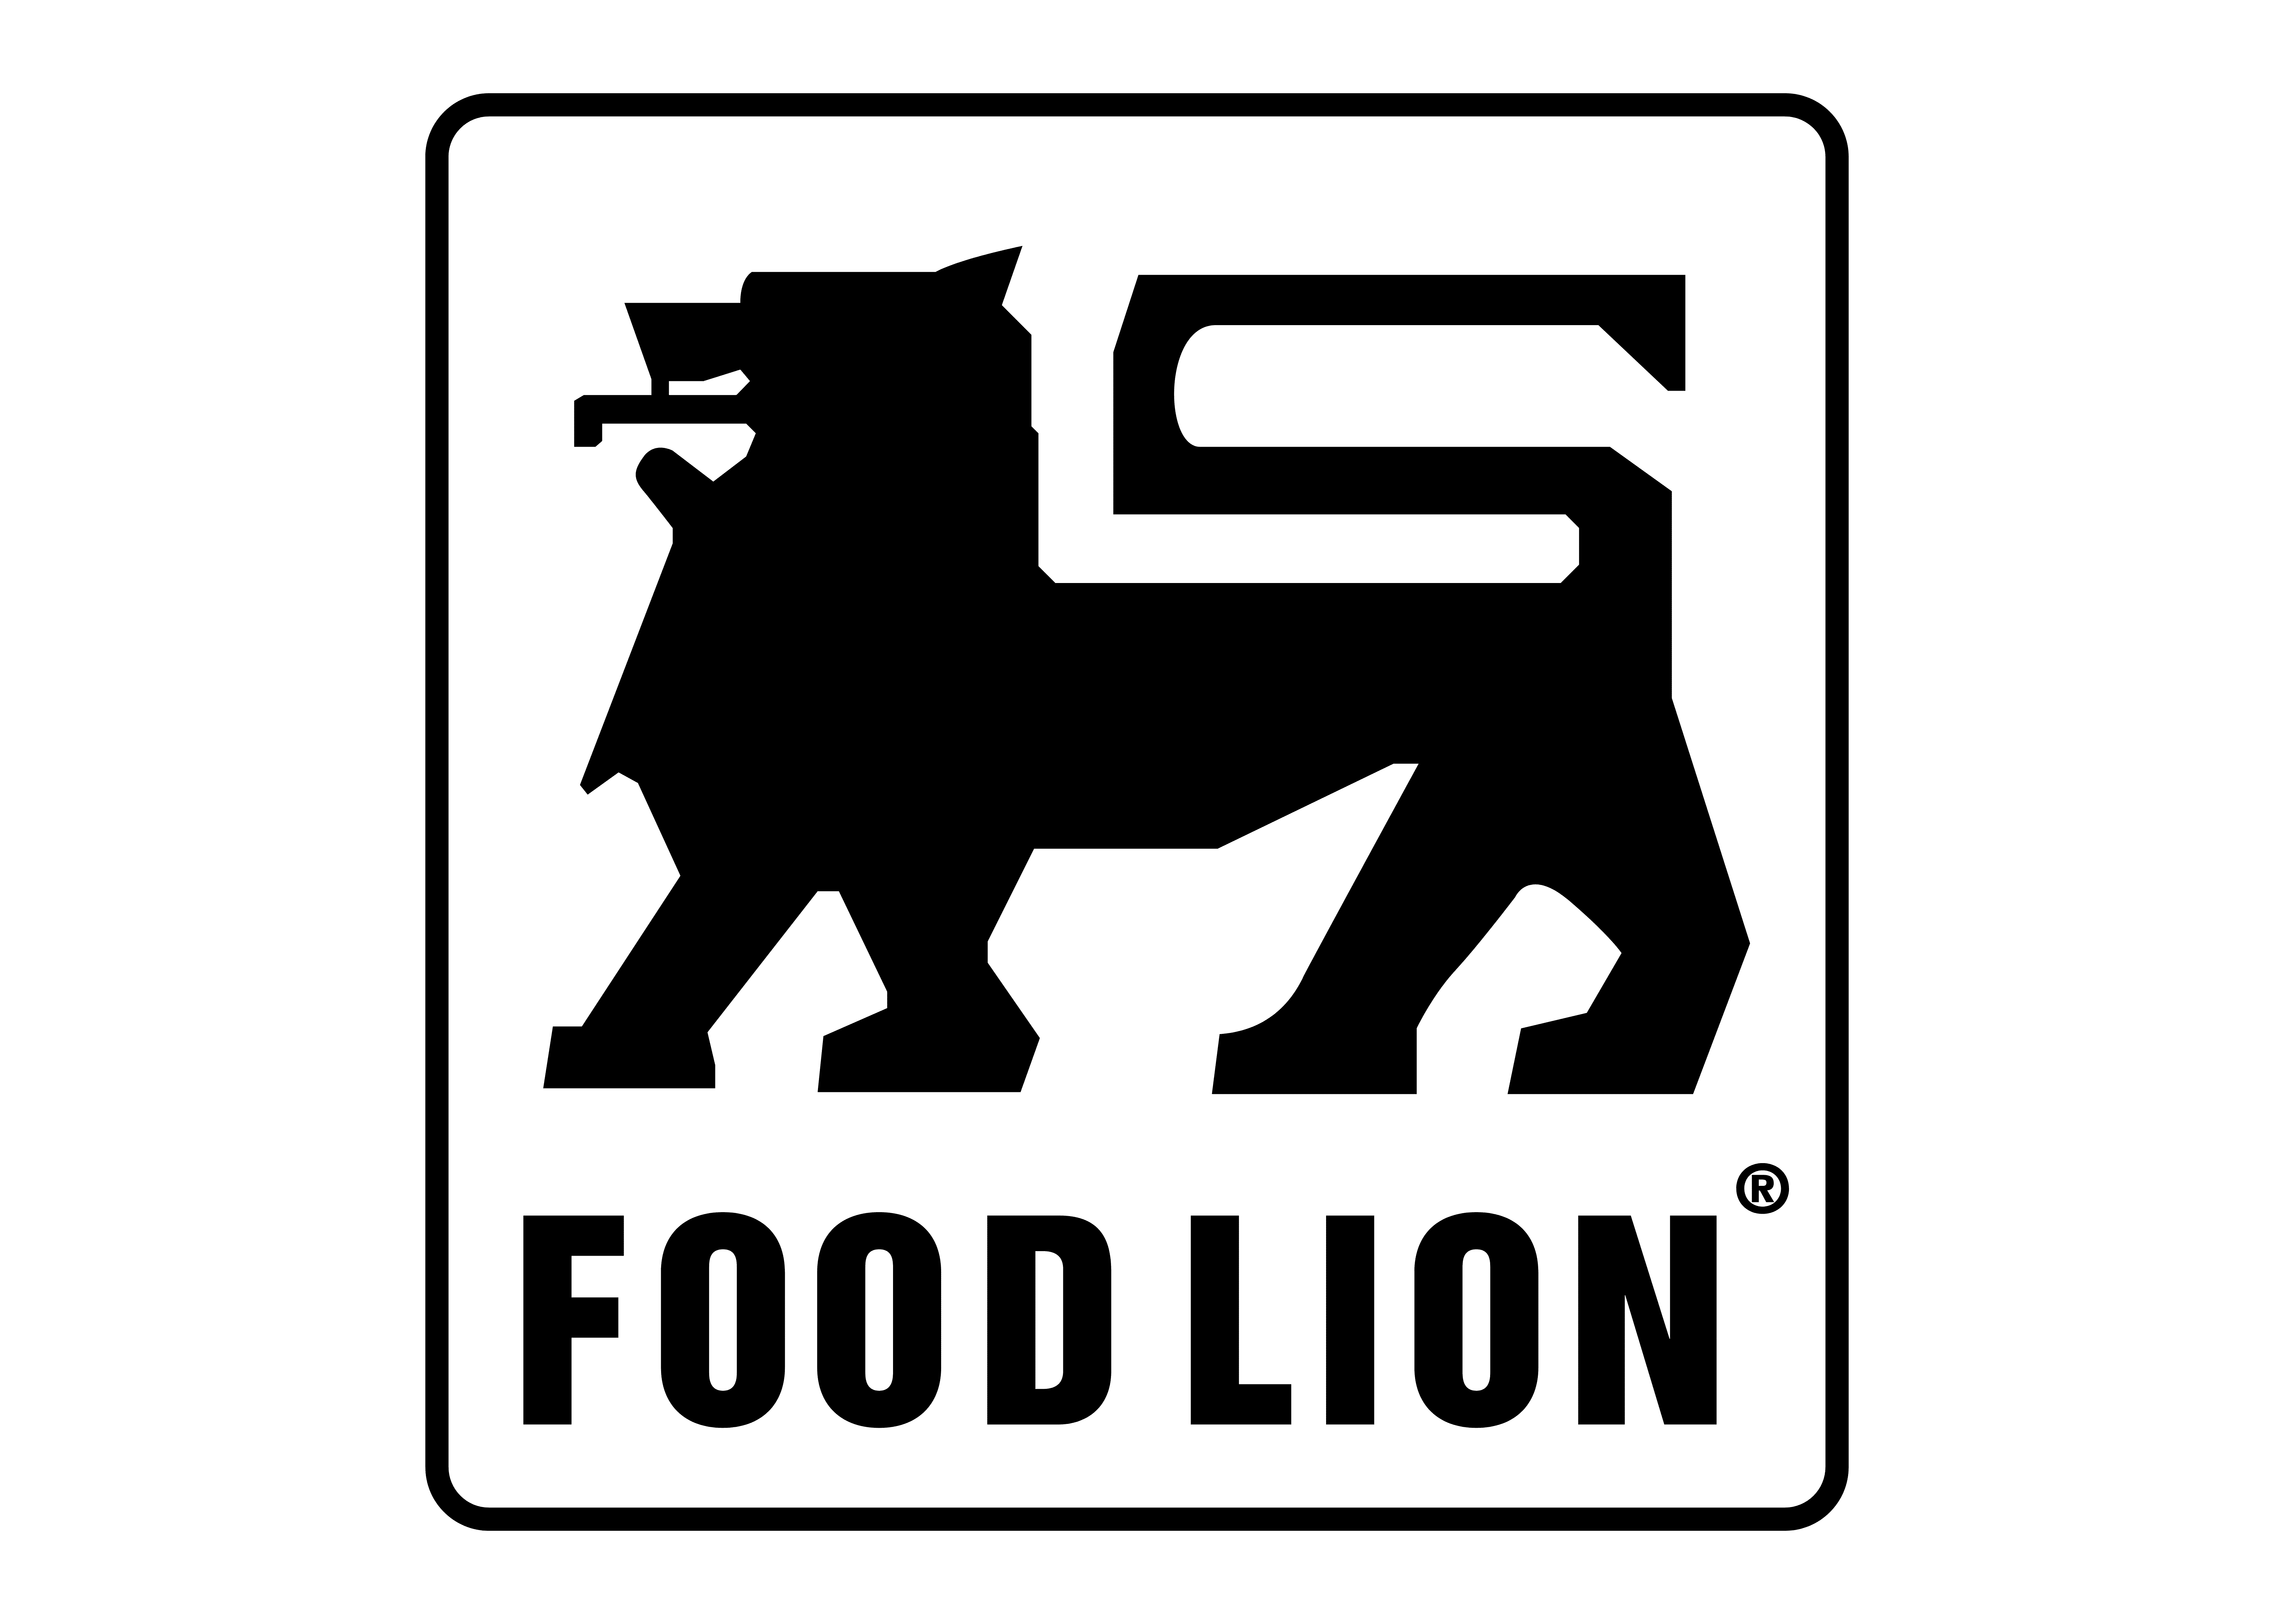 Majestic Lion Logo by Boban Gjerasimoski on Dribbble